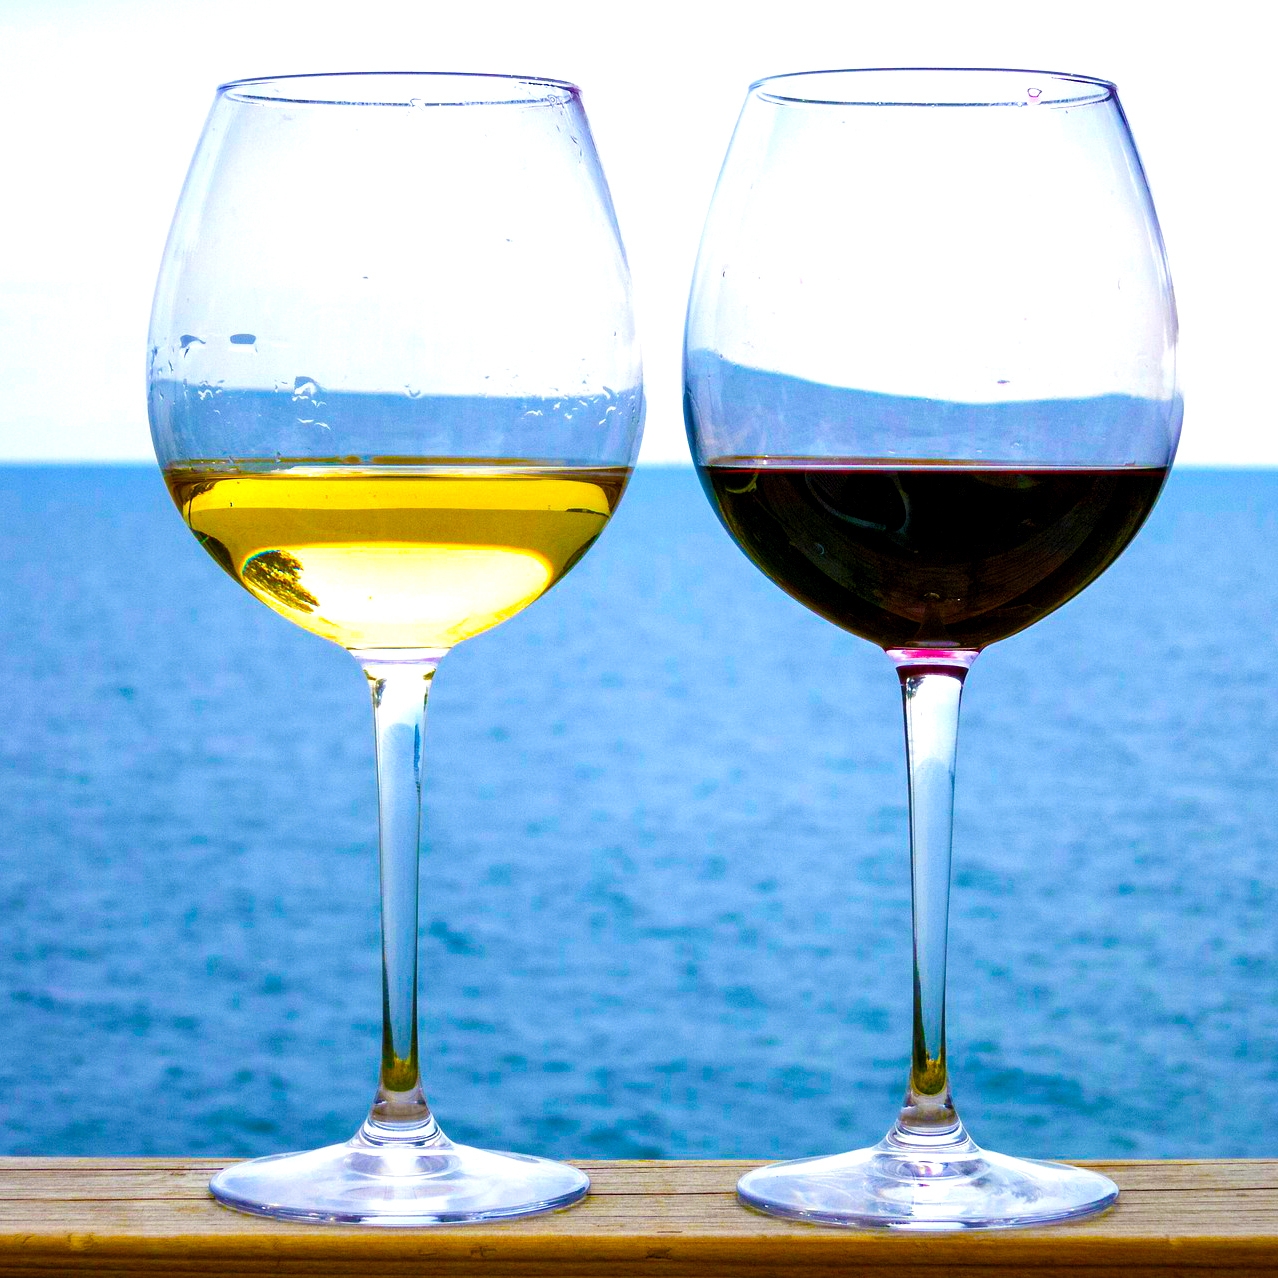 レストラン御用達のスパークリングワイン、白ワイン、赤ワインセット | Giftpad egift